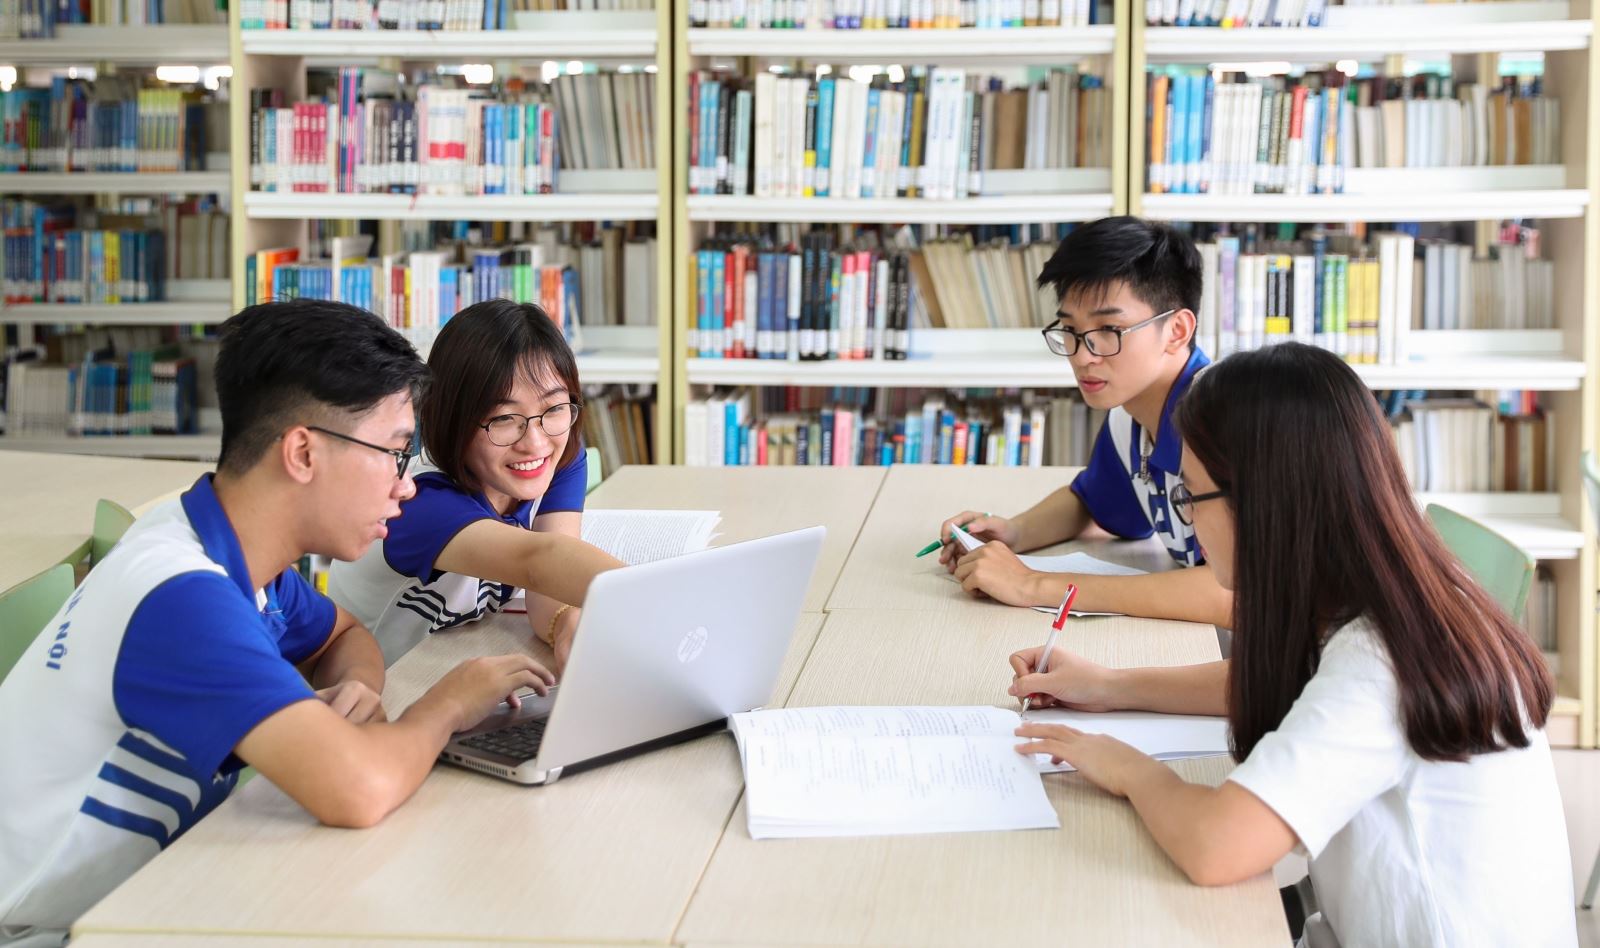 Trắc lượng thư mục thay đổi vai trò của thư viện đại học và nghề thư viện